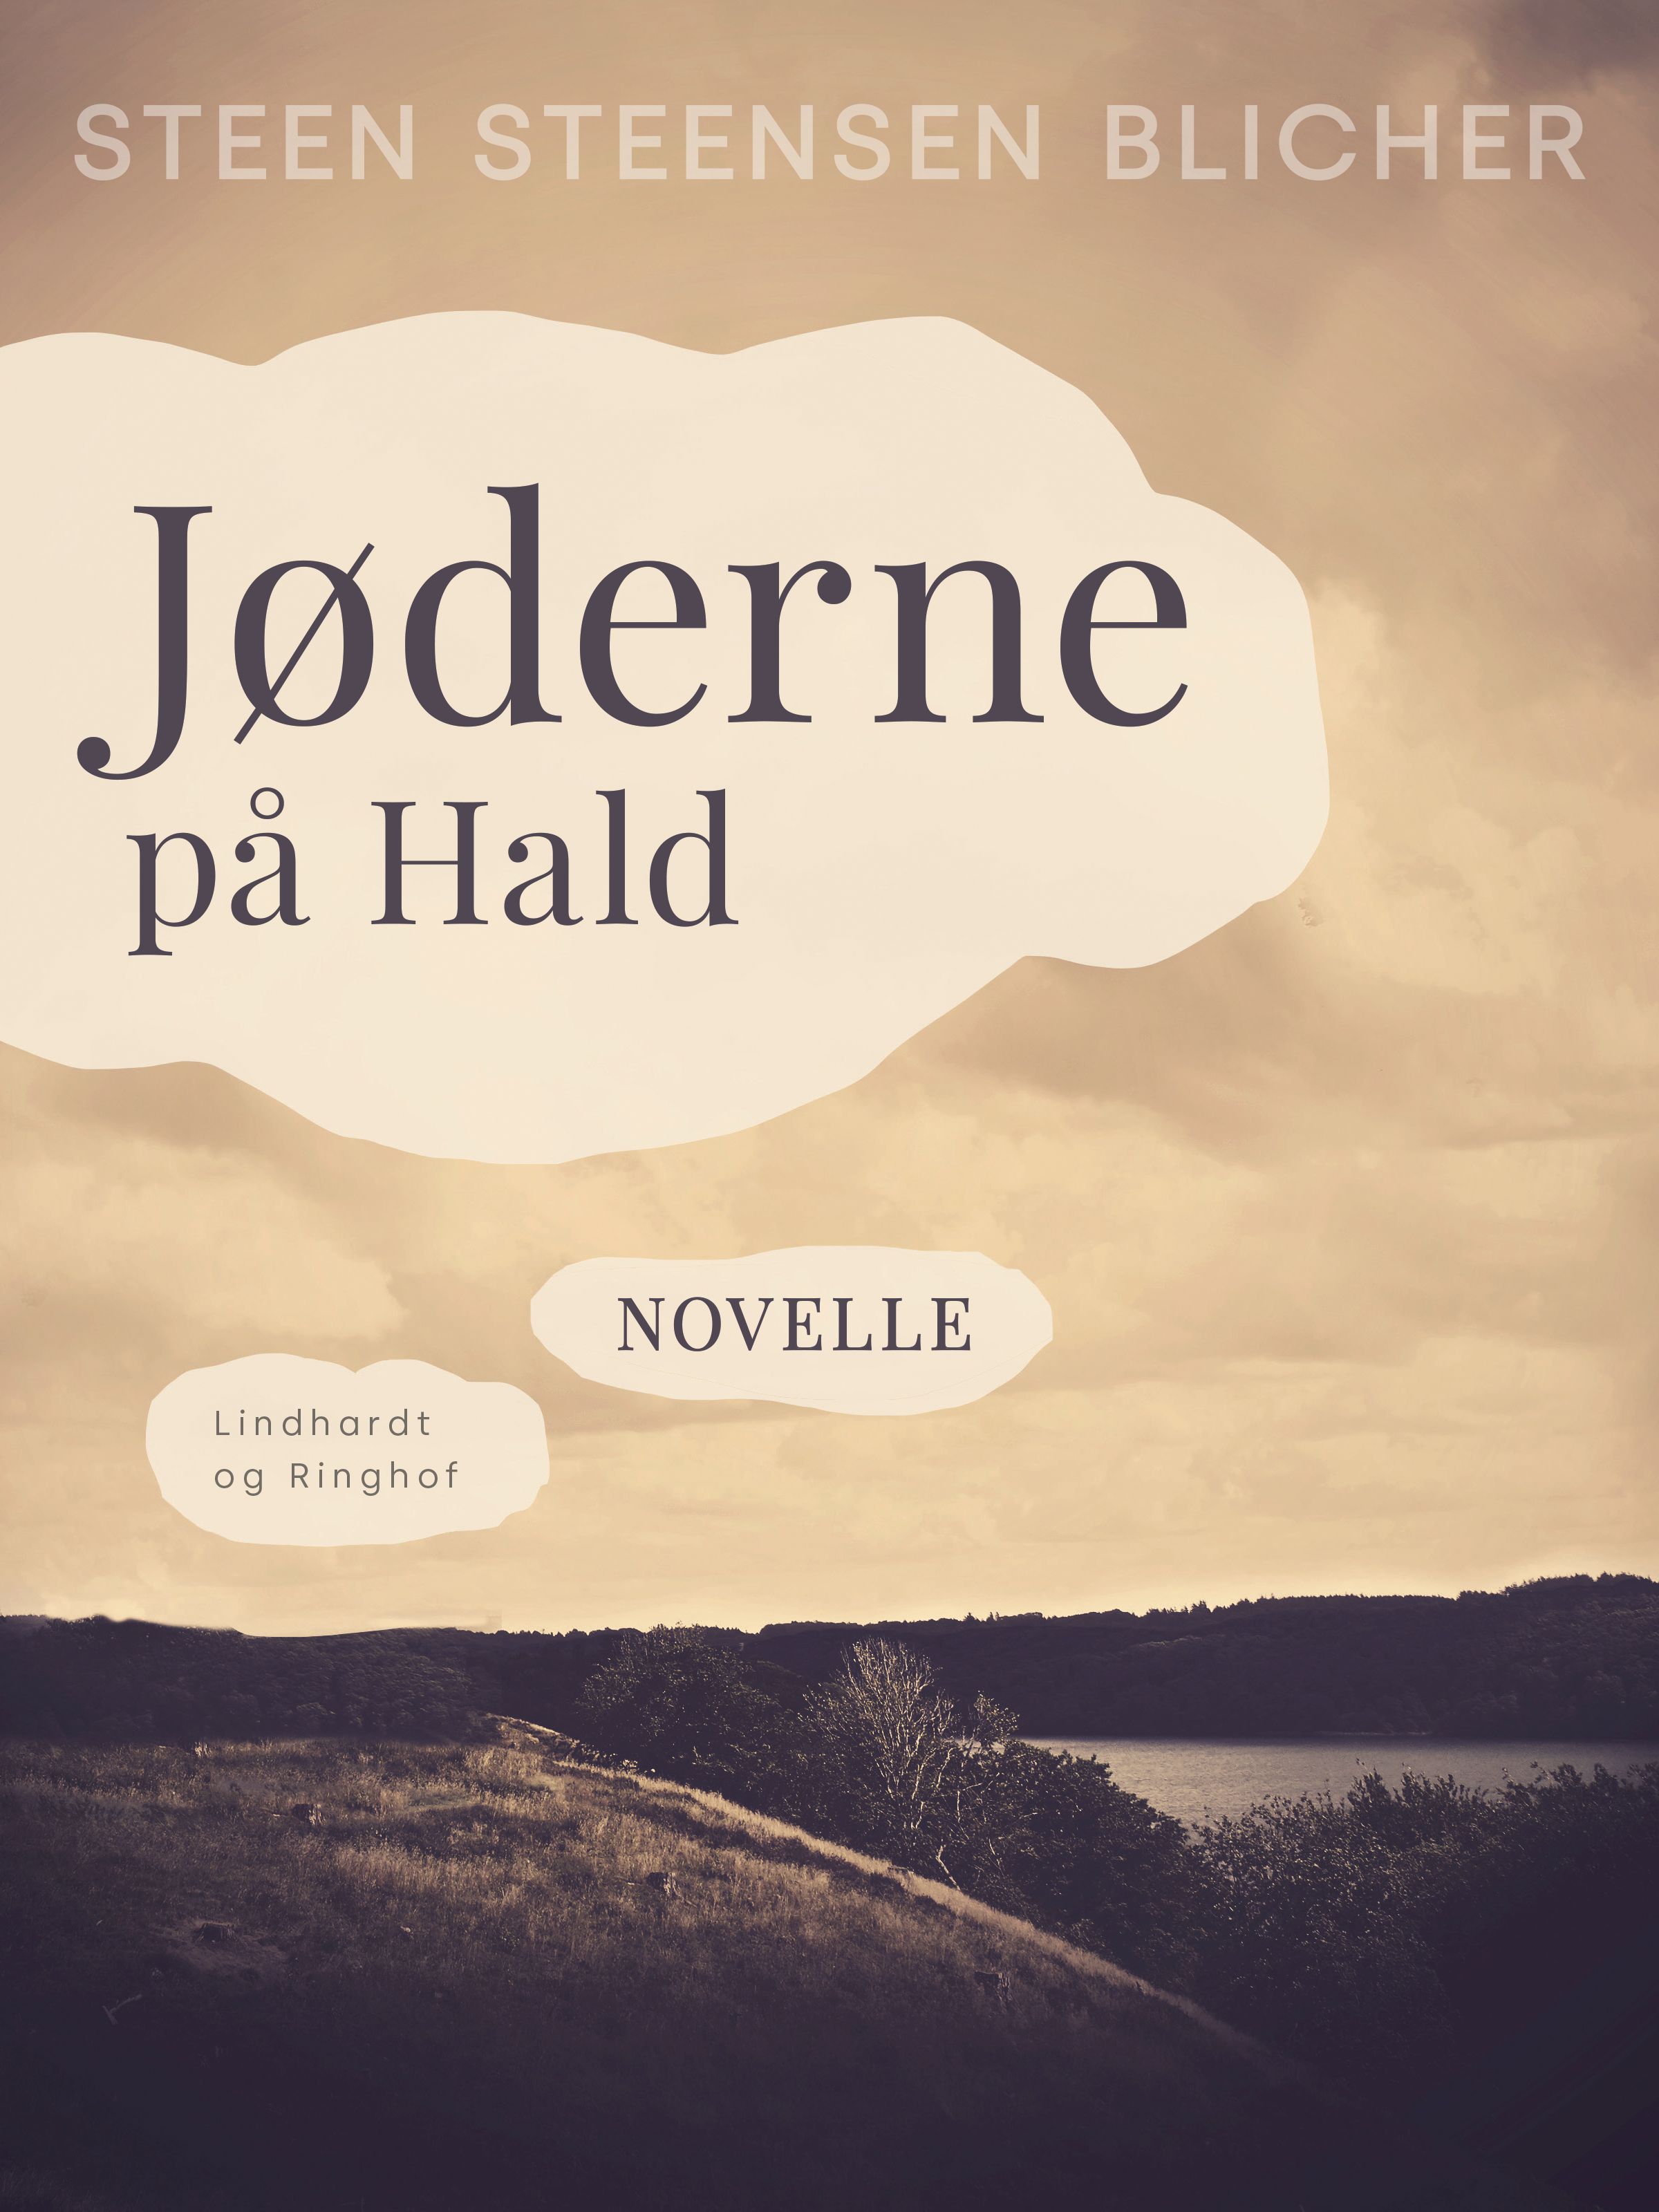 Jøderne på Hald, eBook by Steen Steensen Blicher